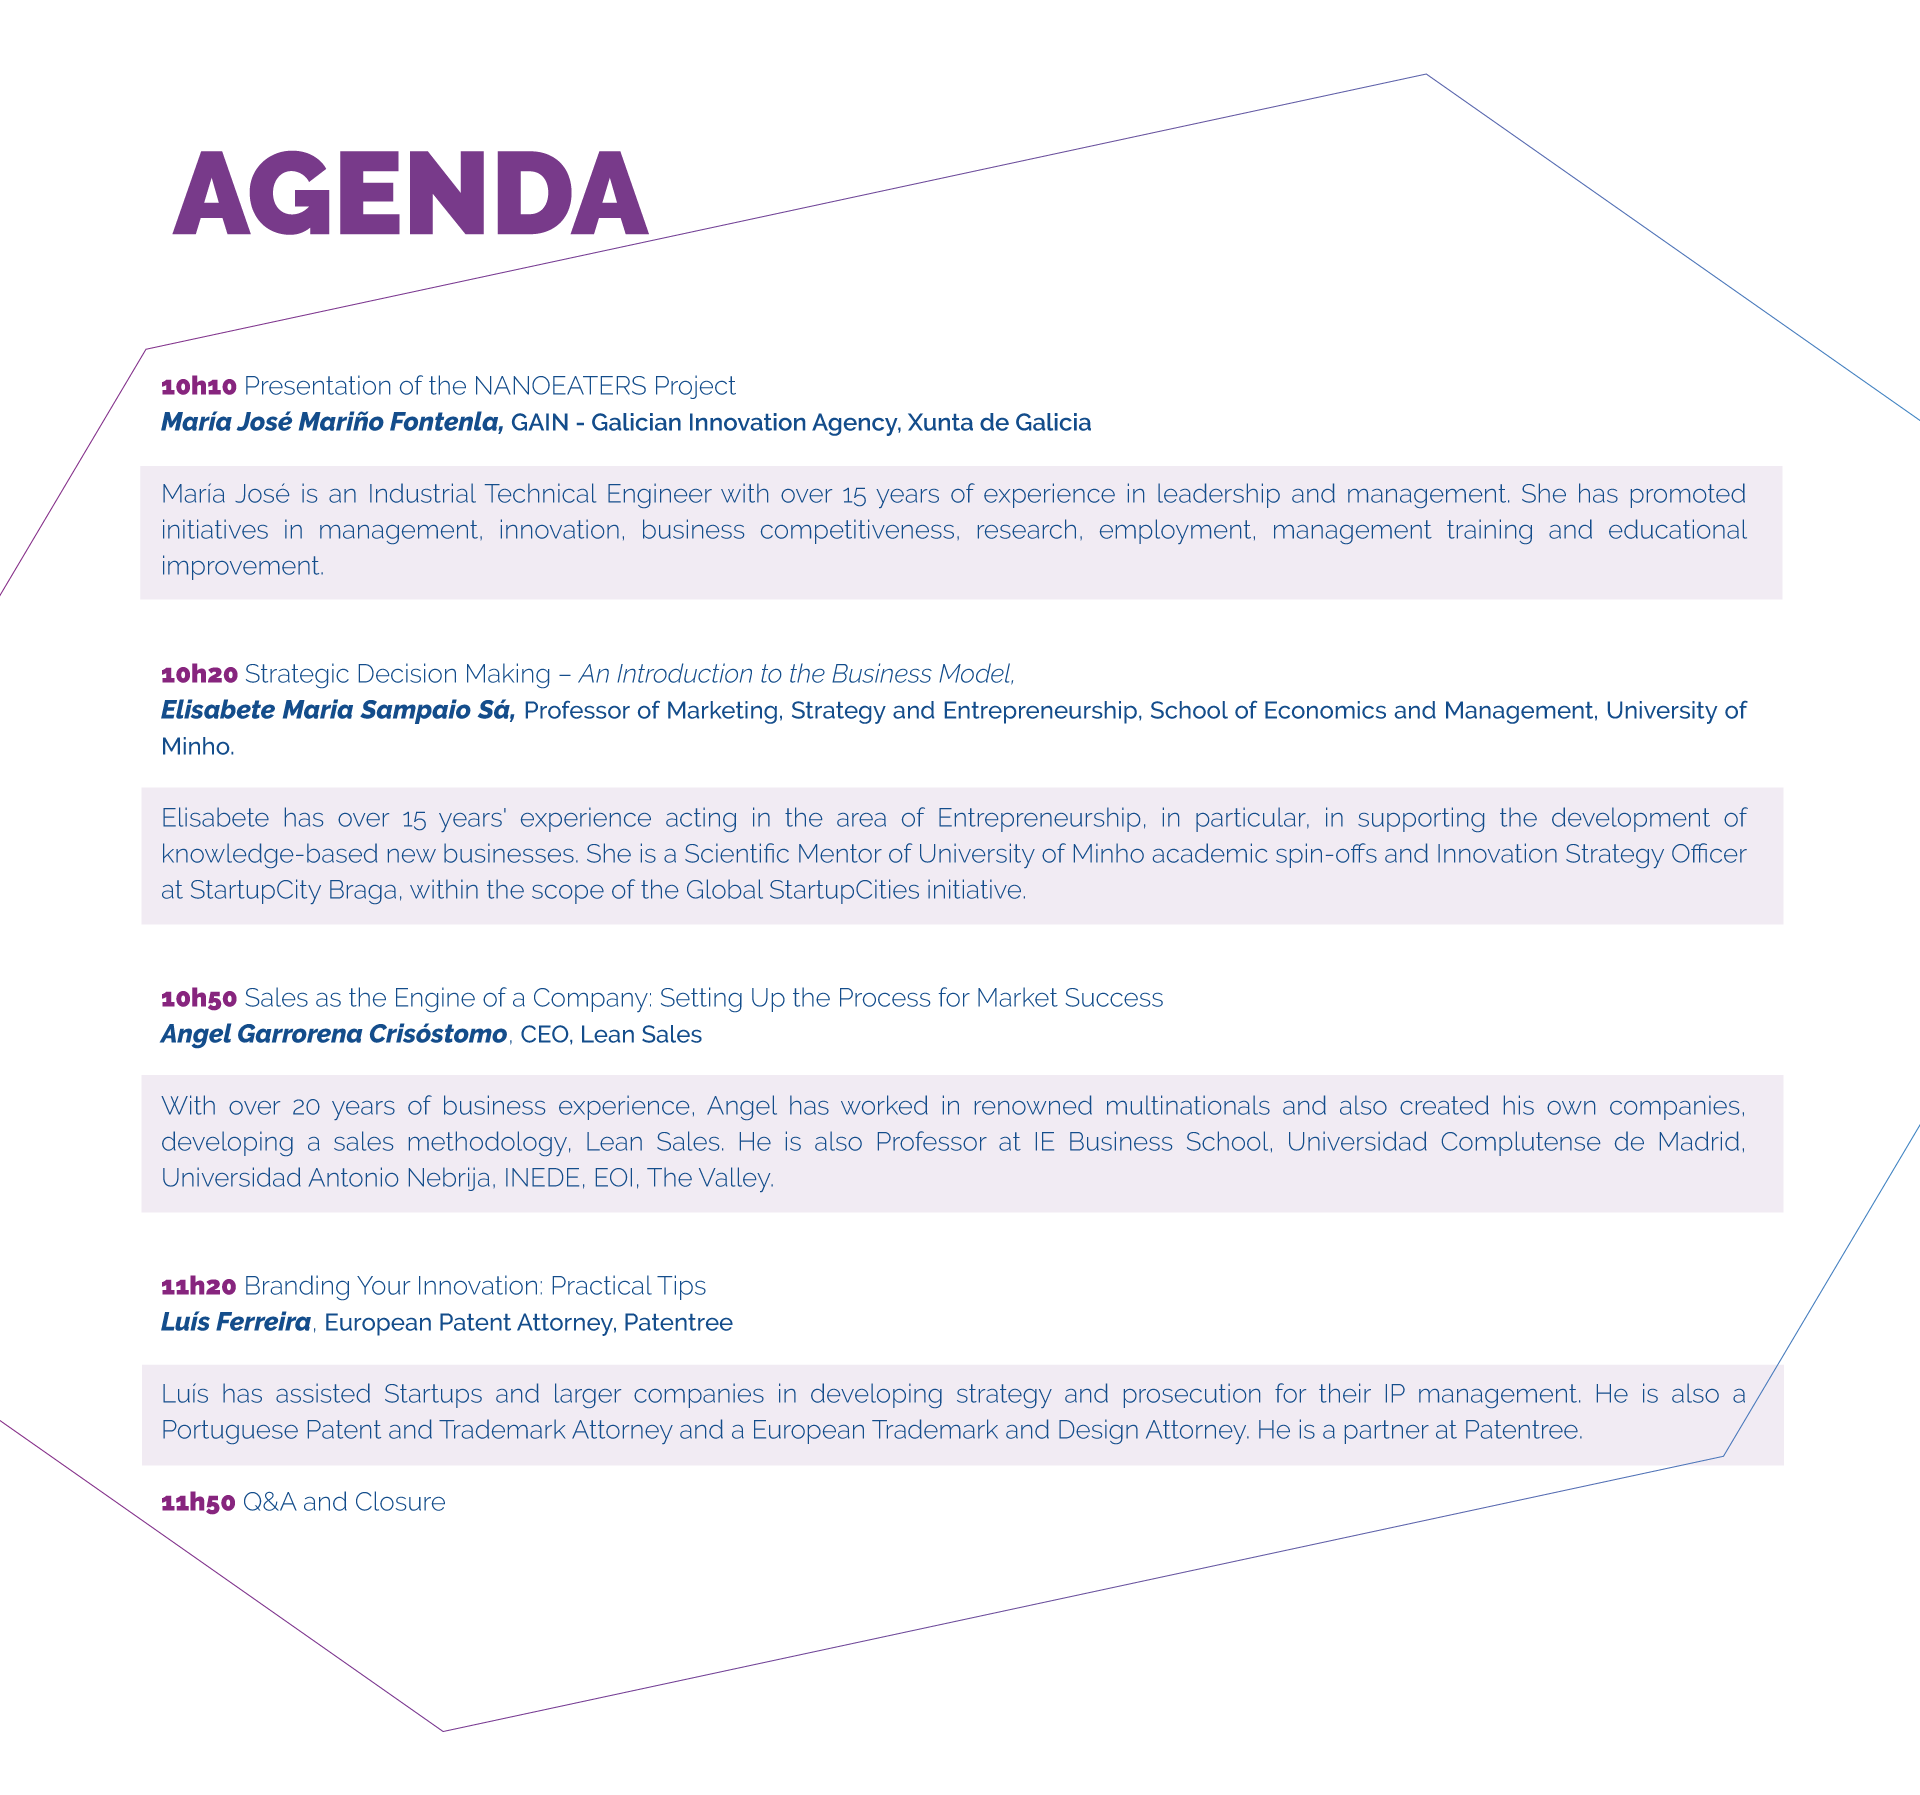 SciencepreneursFinal_Agenda.png